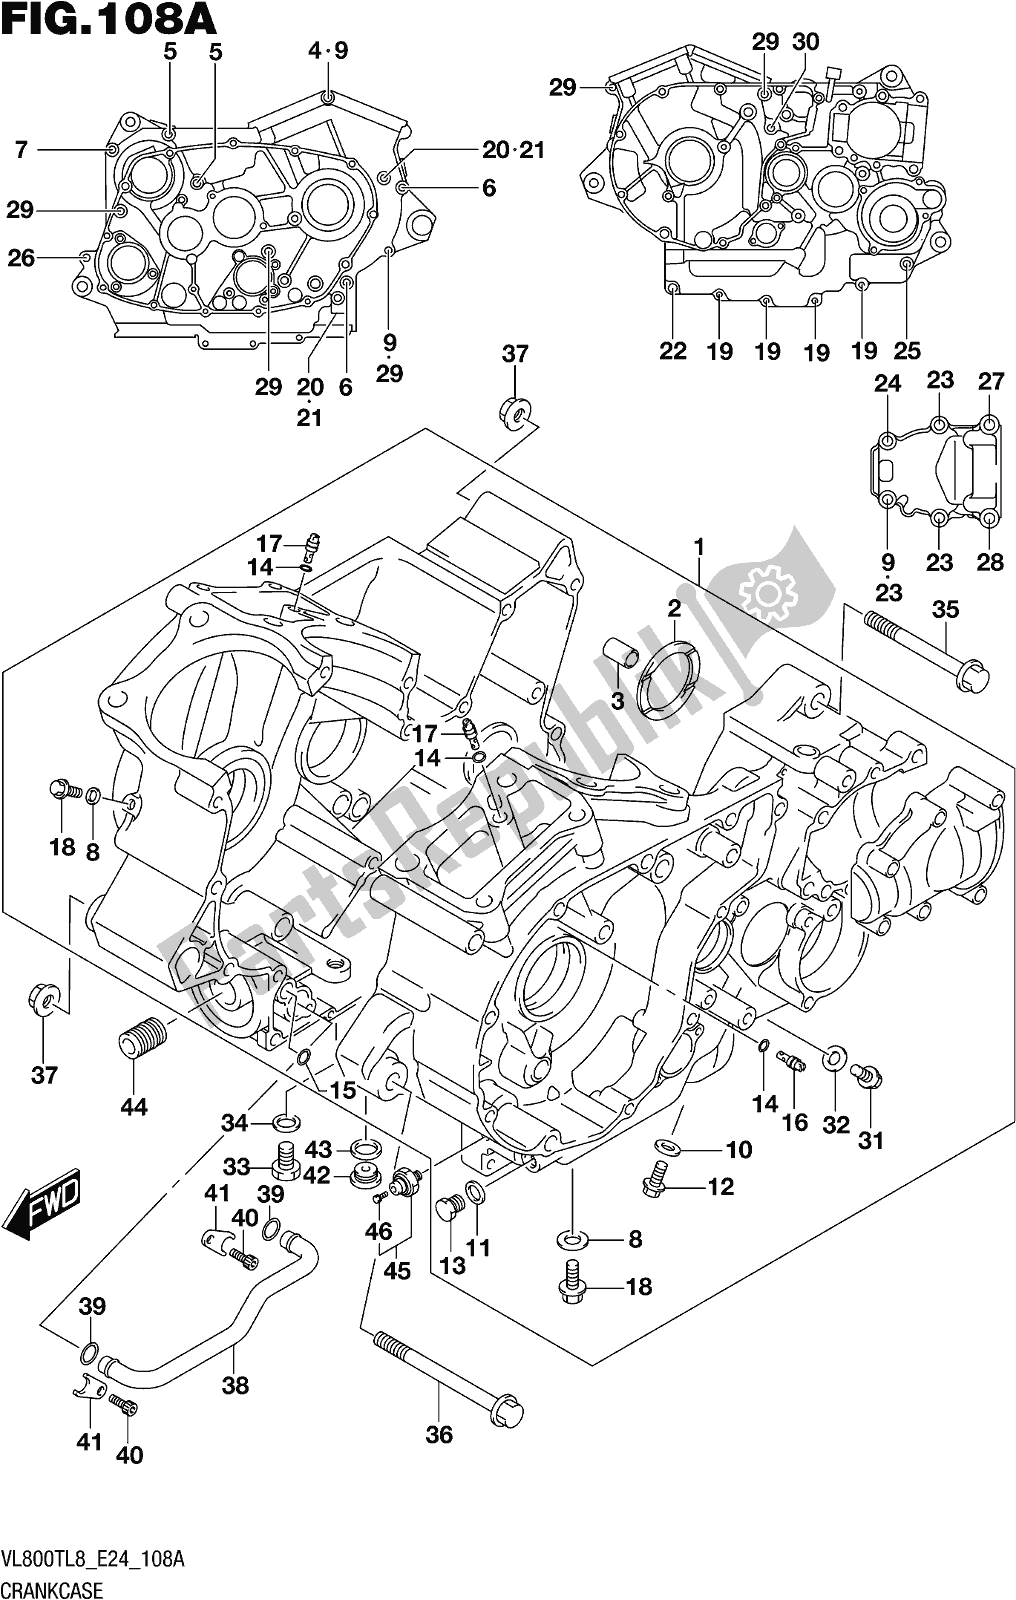 Toutes les pièces pour le Fig. 108a Crankcase du Suzuki VL 800T 2018